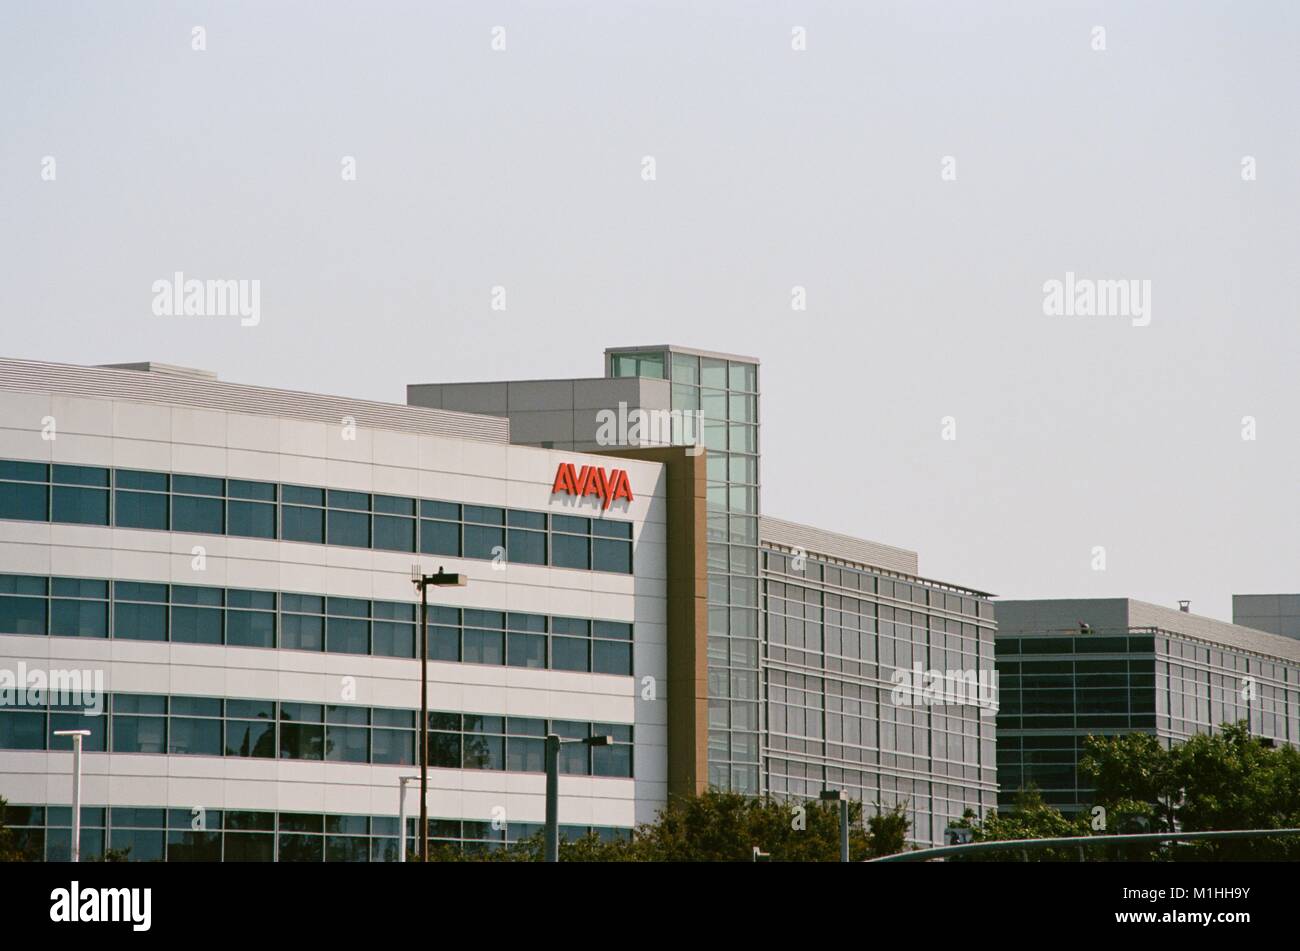 Vue de côté façade avec logo pour société de technologie de communications Avaya dans la Silicon Valley, Santa Clara, Californie, 17 août 2017. () Banque D'Images